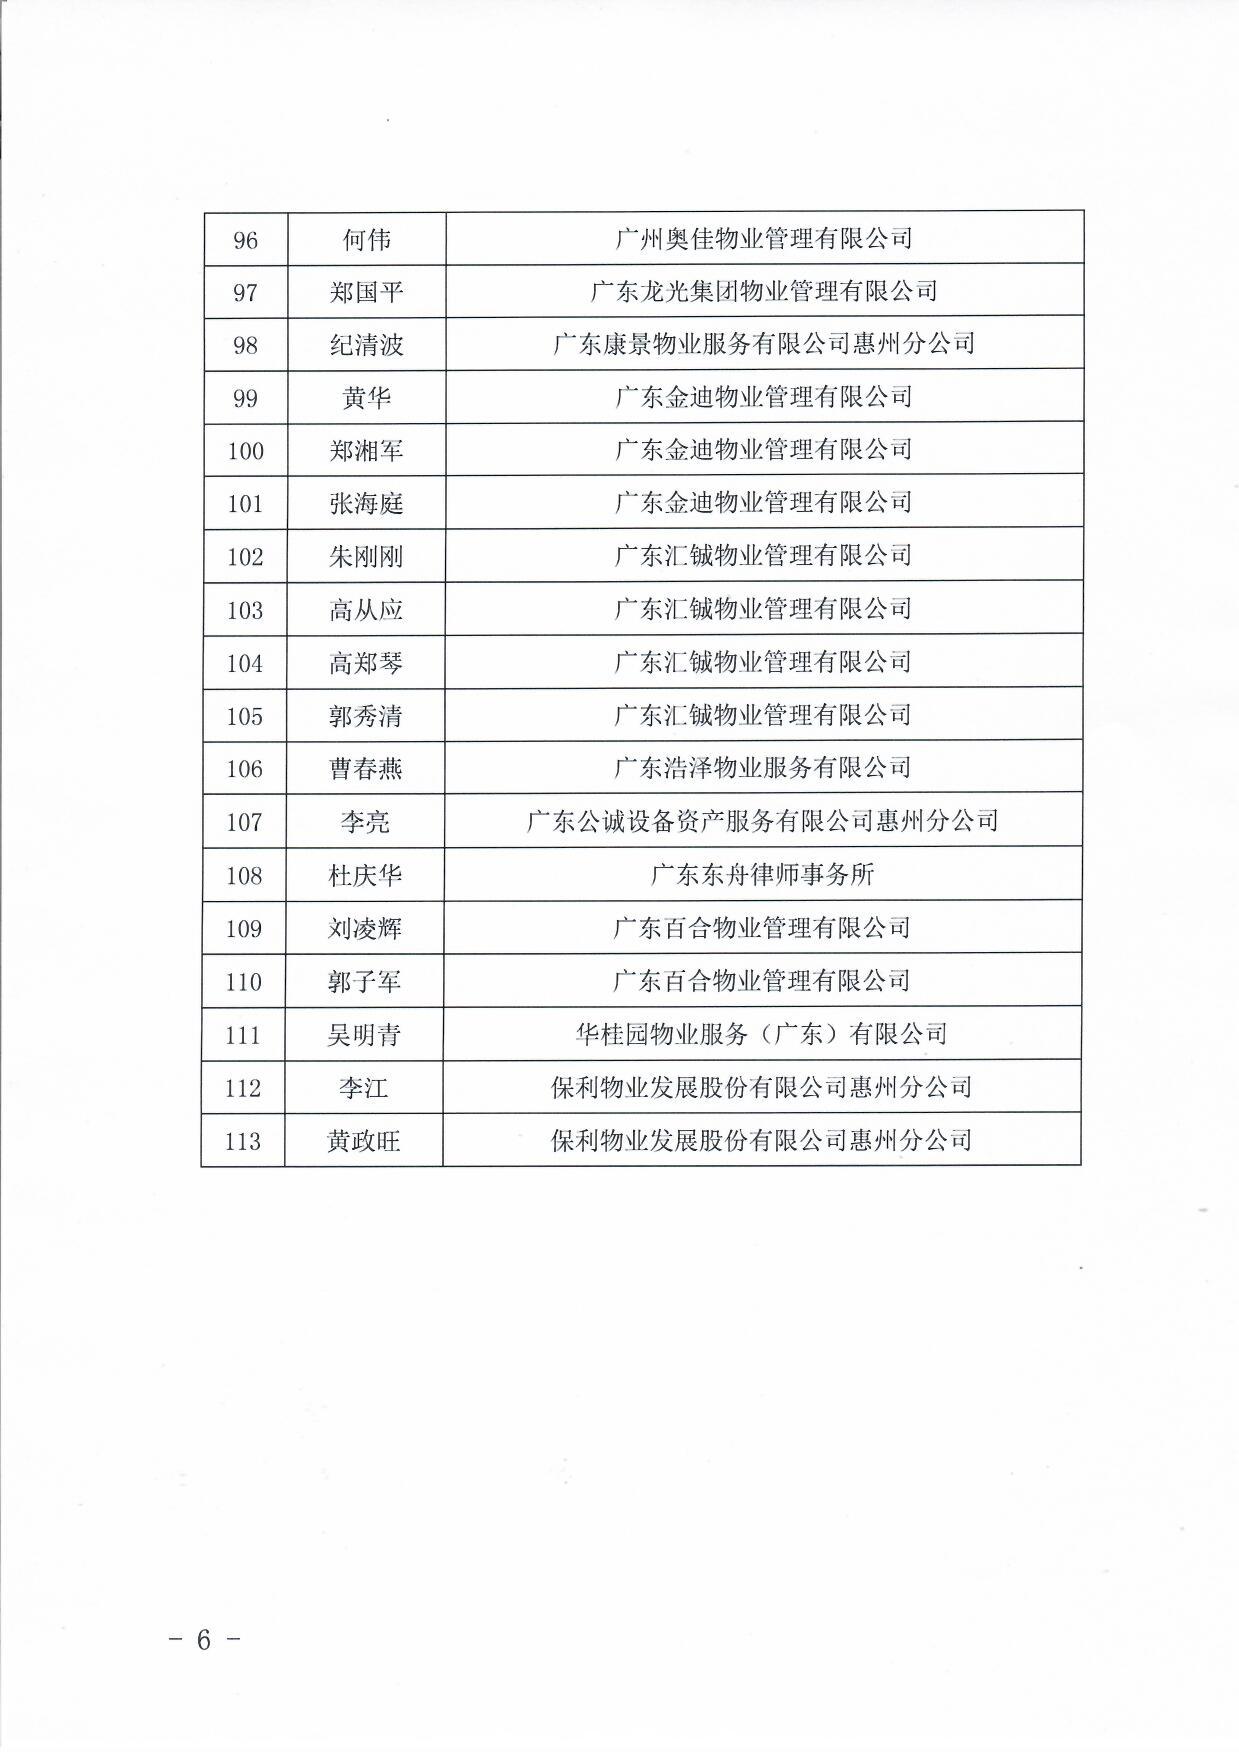 关于惠州市物业服务行业专家库入库成员名单的公告6.jpg